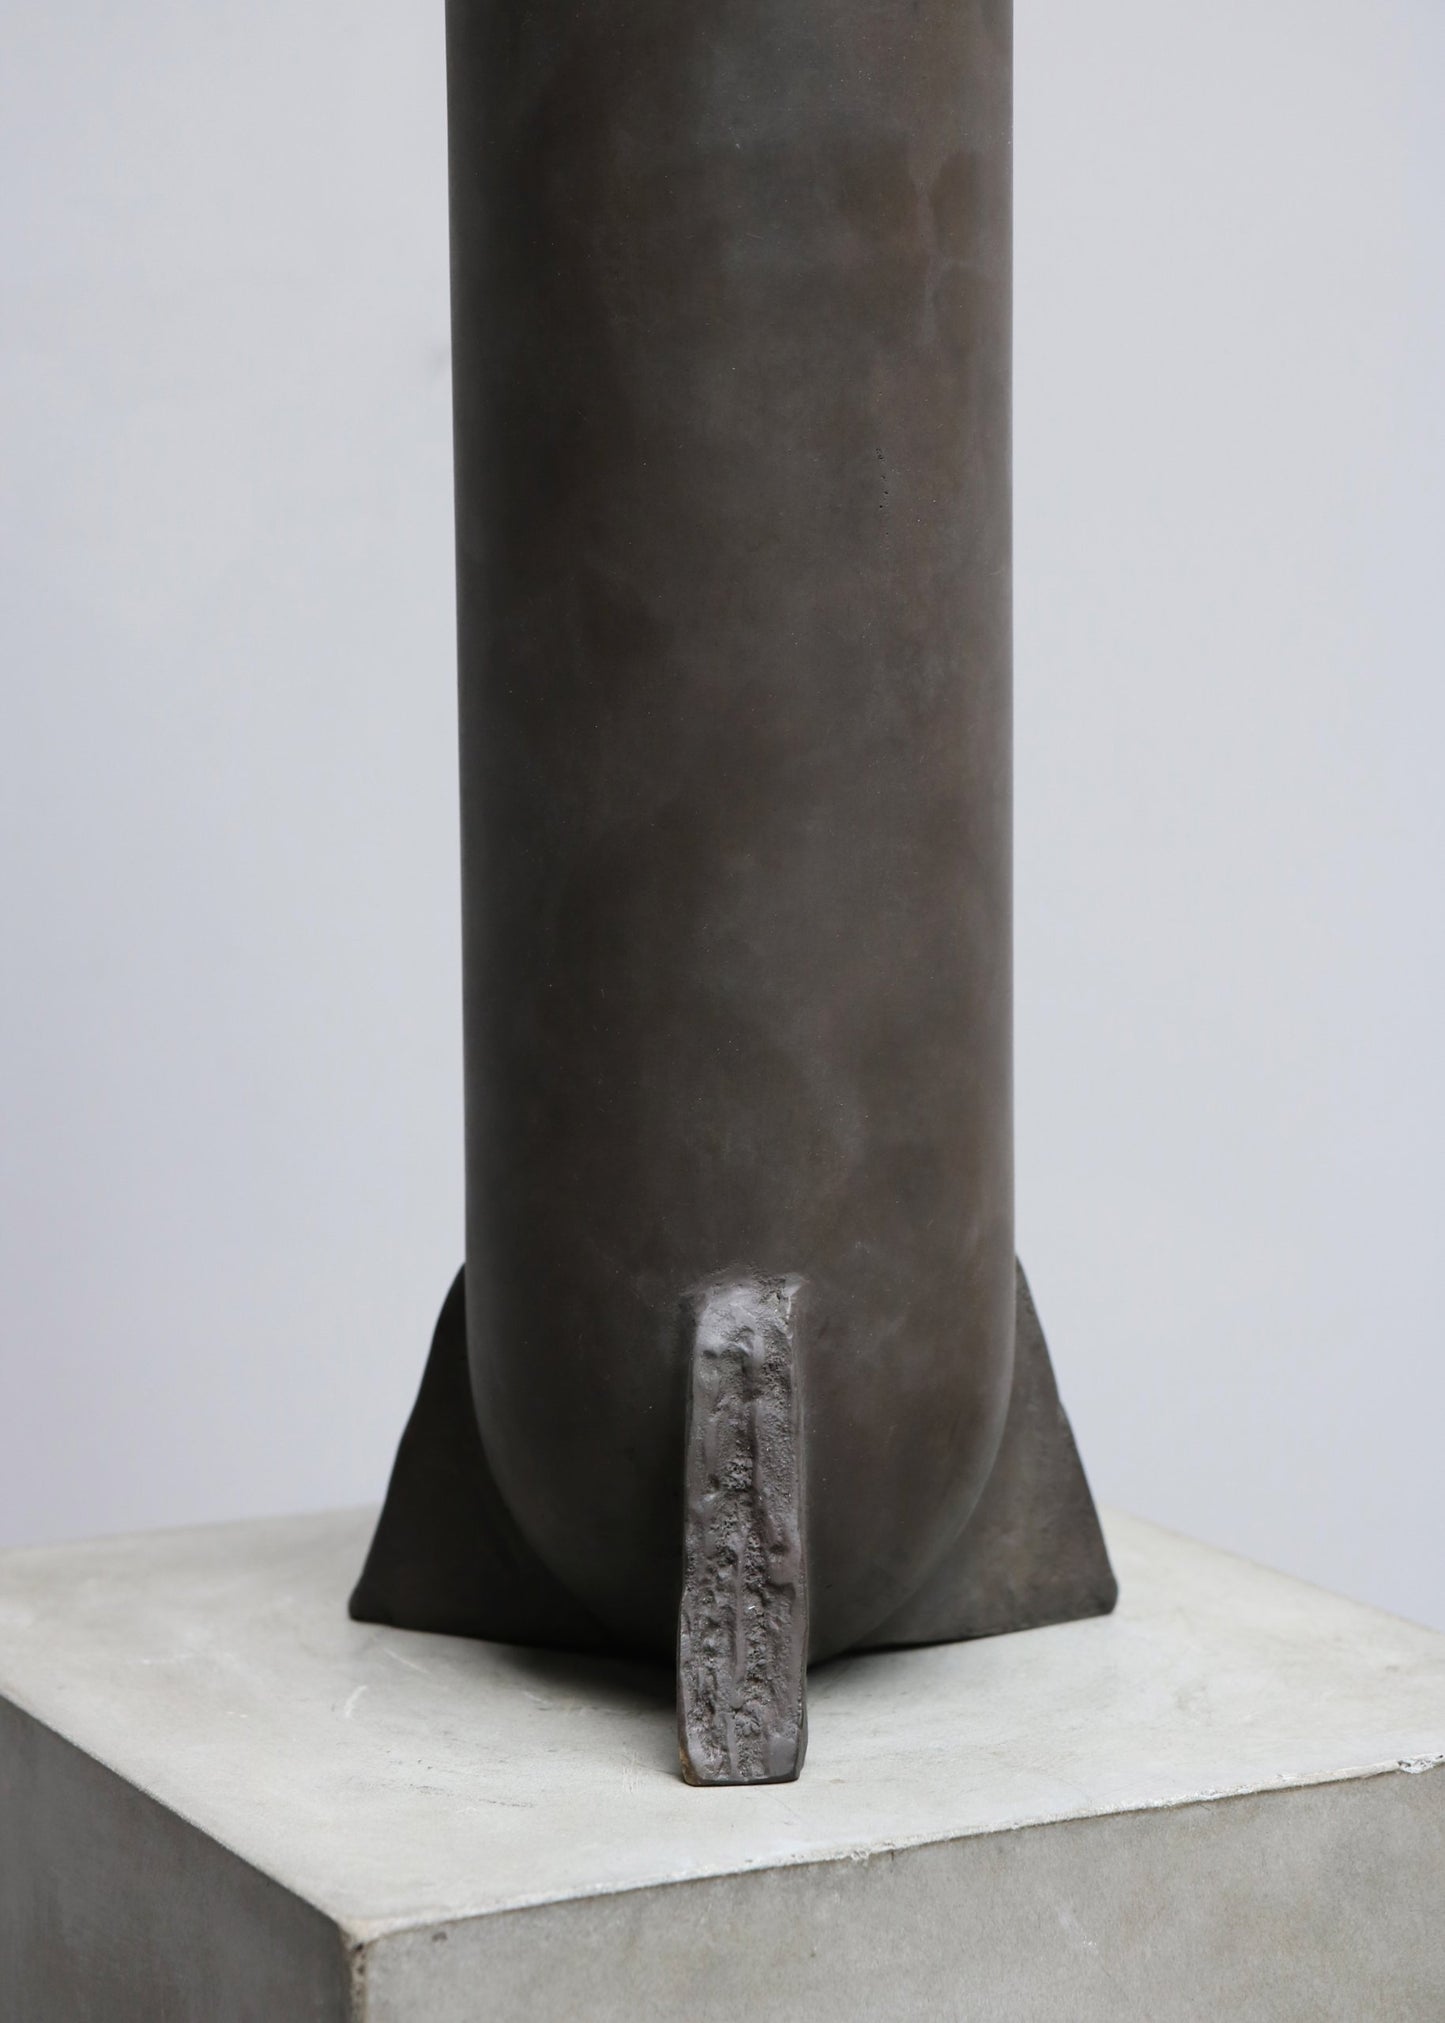 "Urnette Vase" by Rick Owens